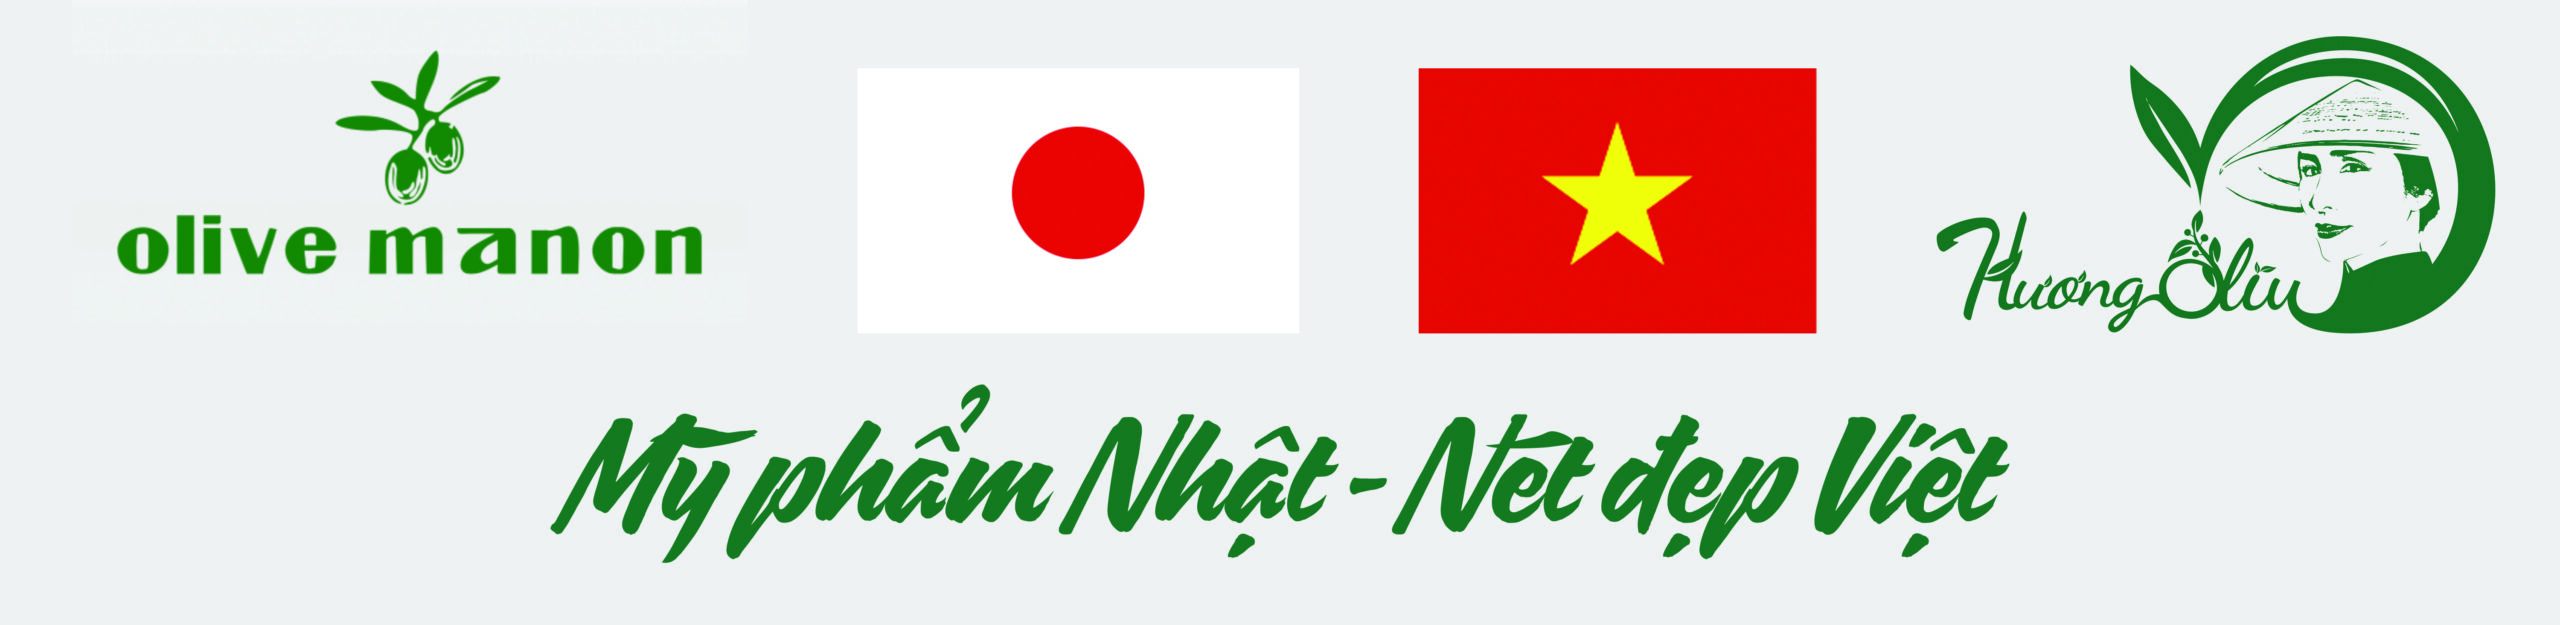 Mỹ phẩm Nhật - Nét đẹp Việt